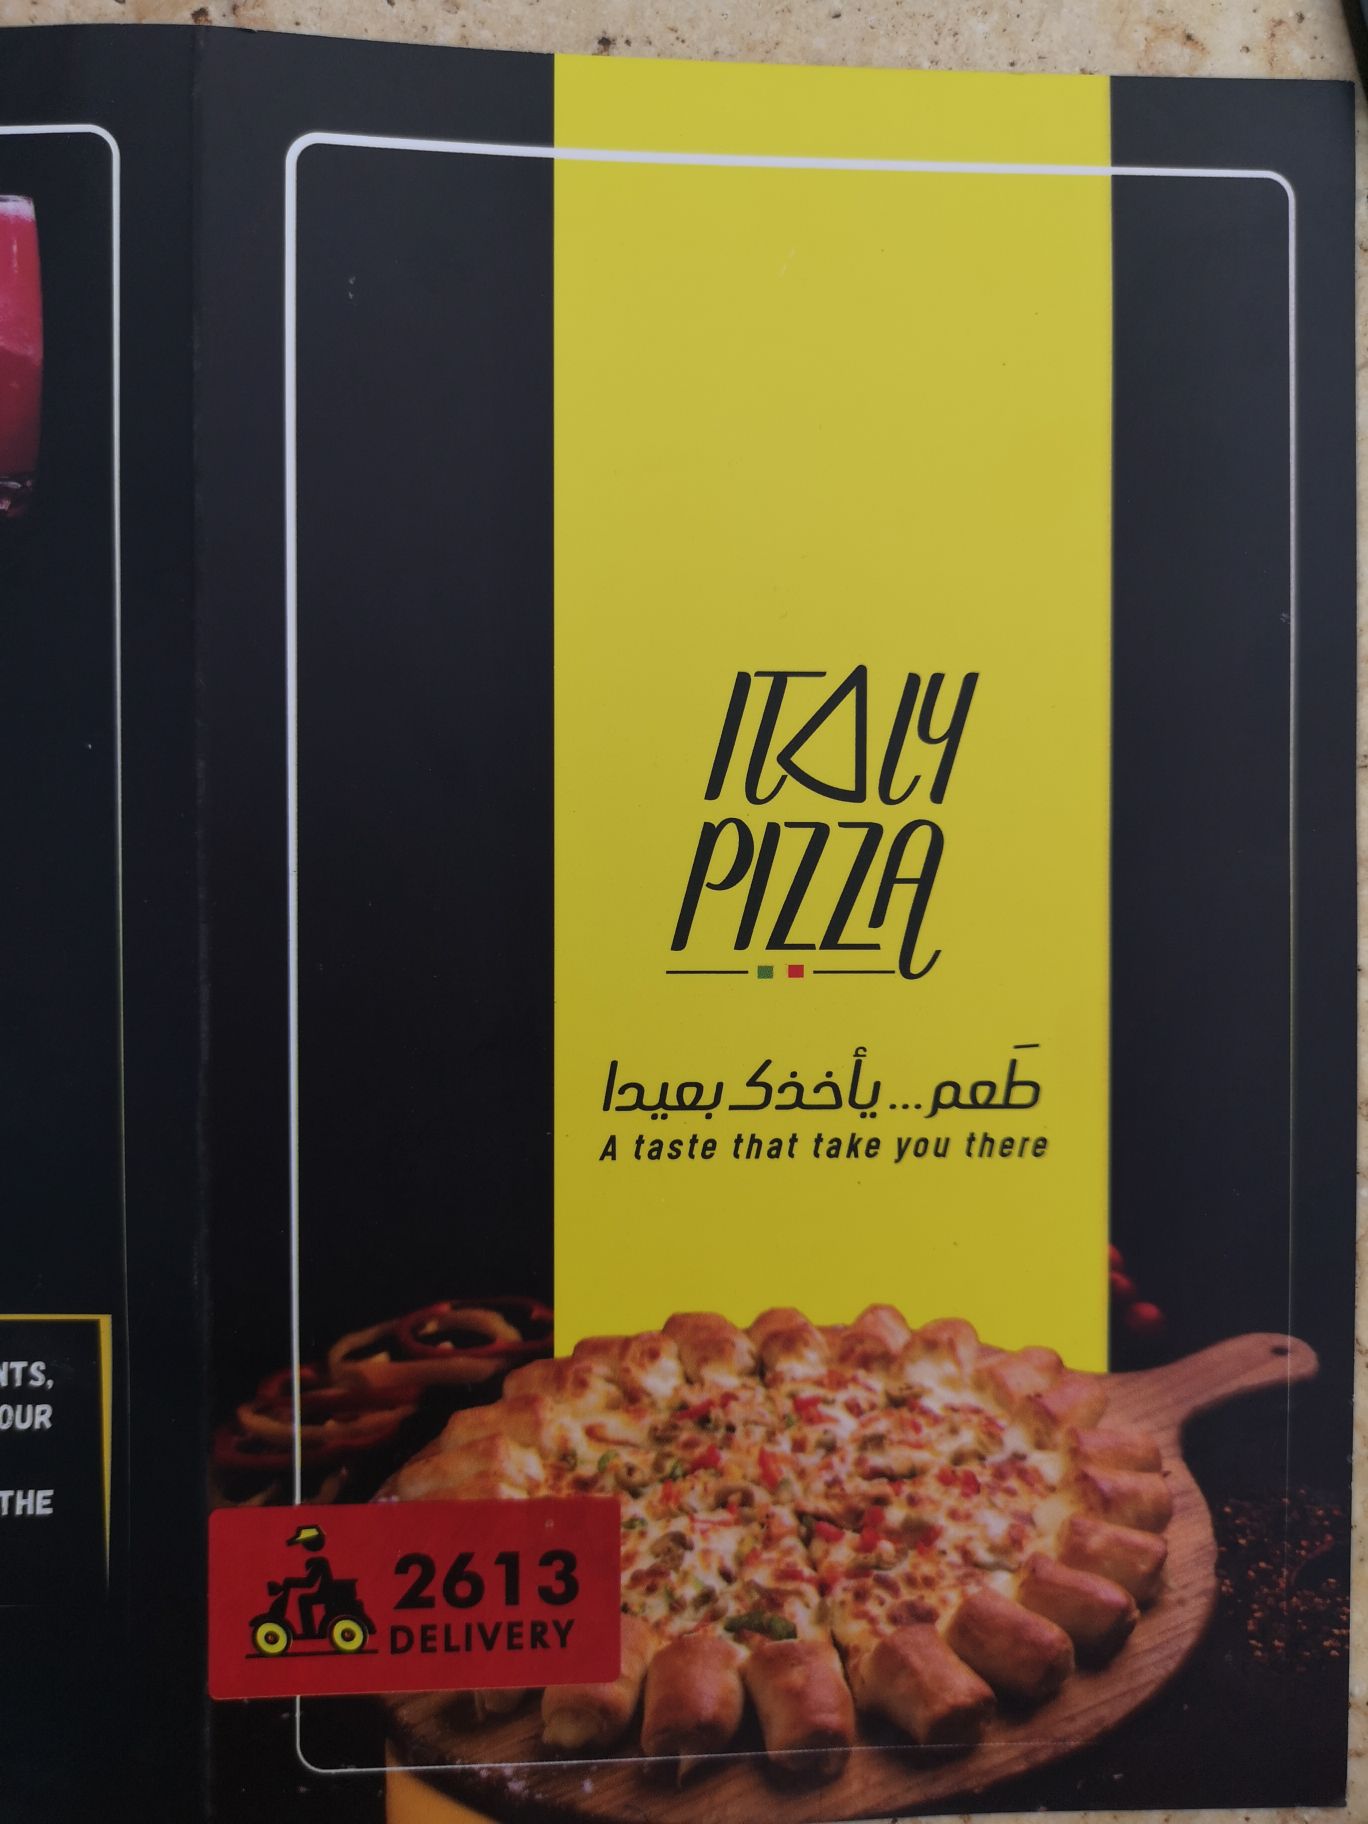 我们的据点ITALY PIZZA，相当好吃，推荐给大家。